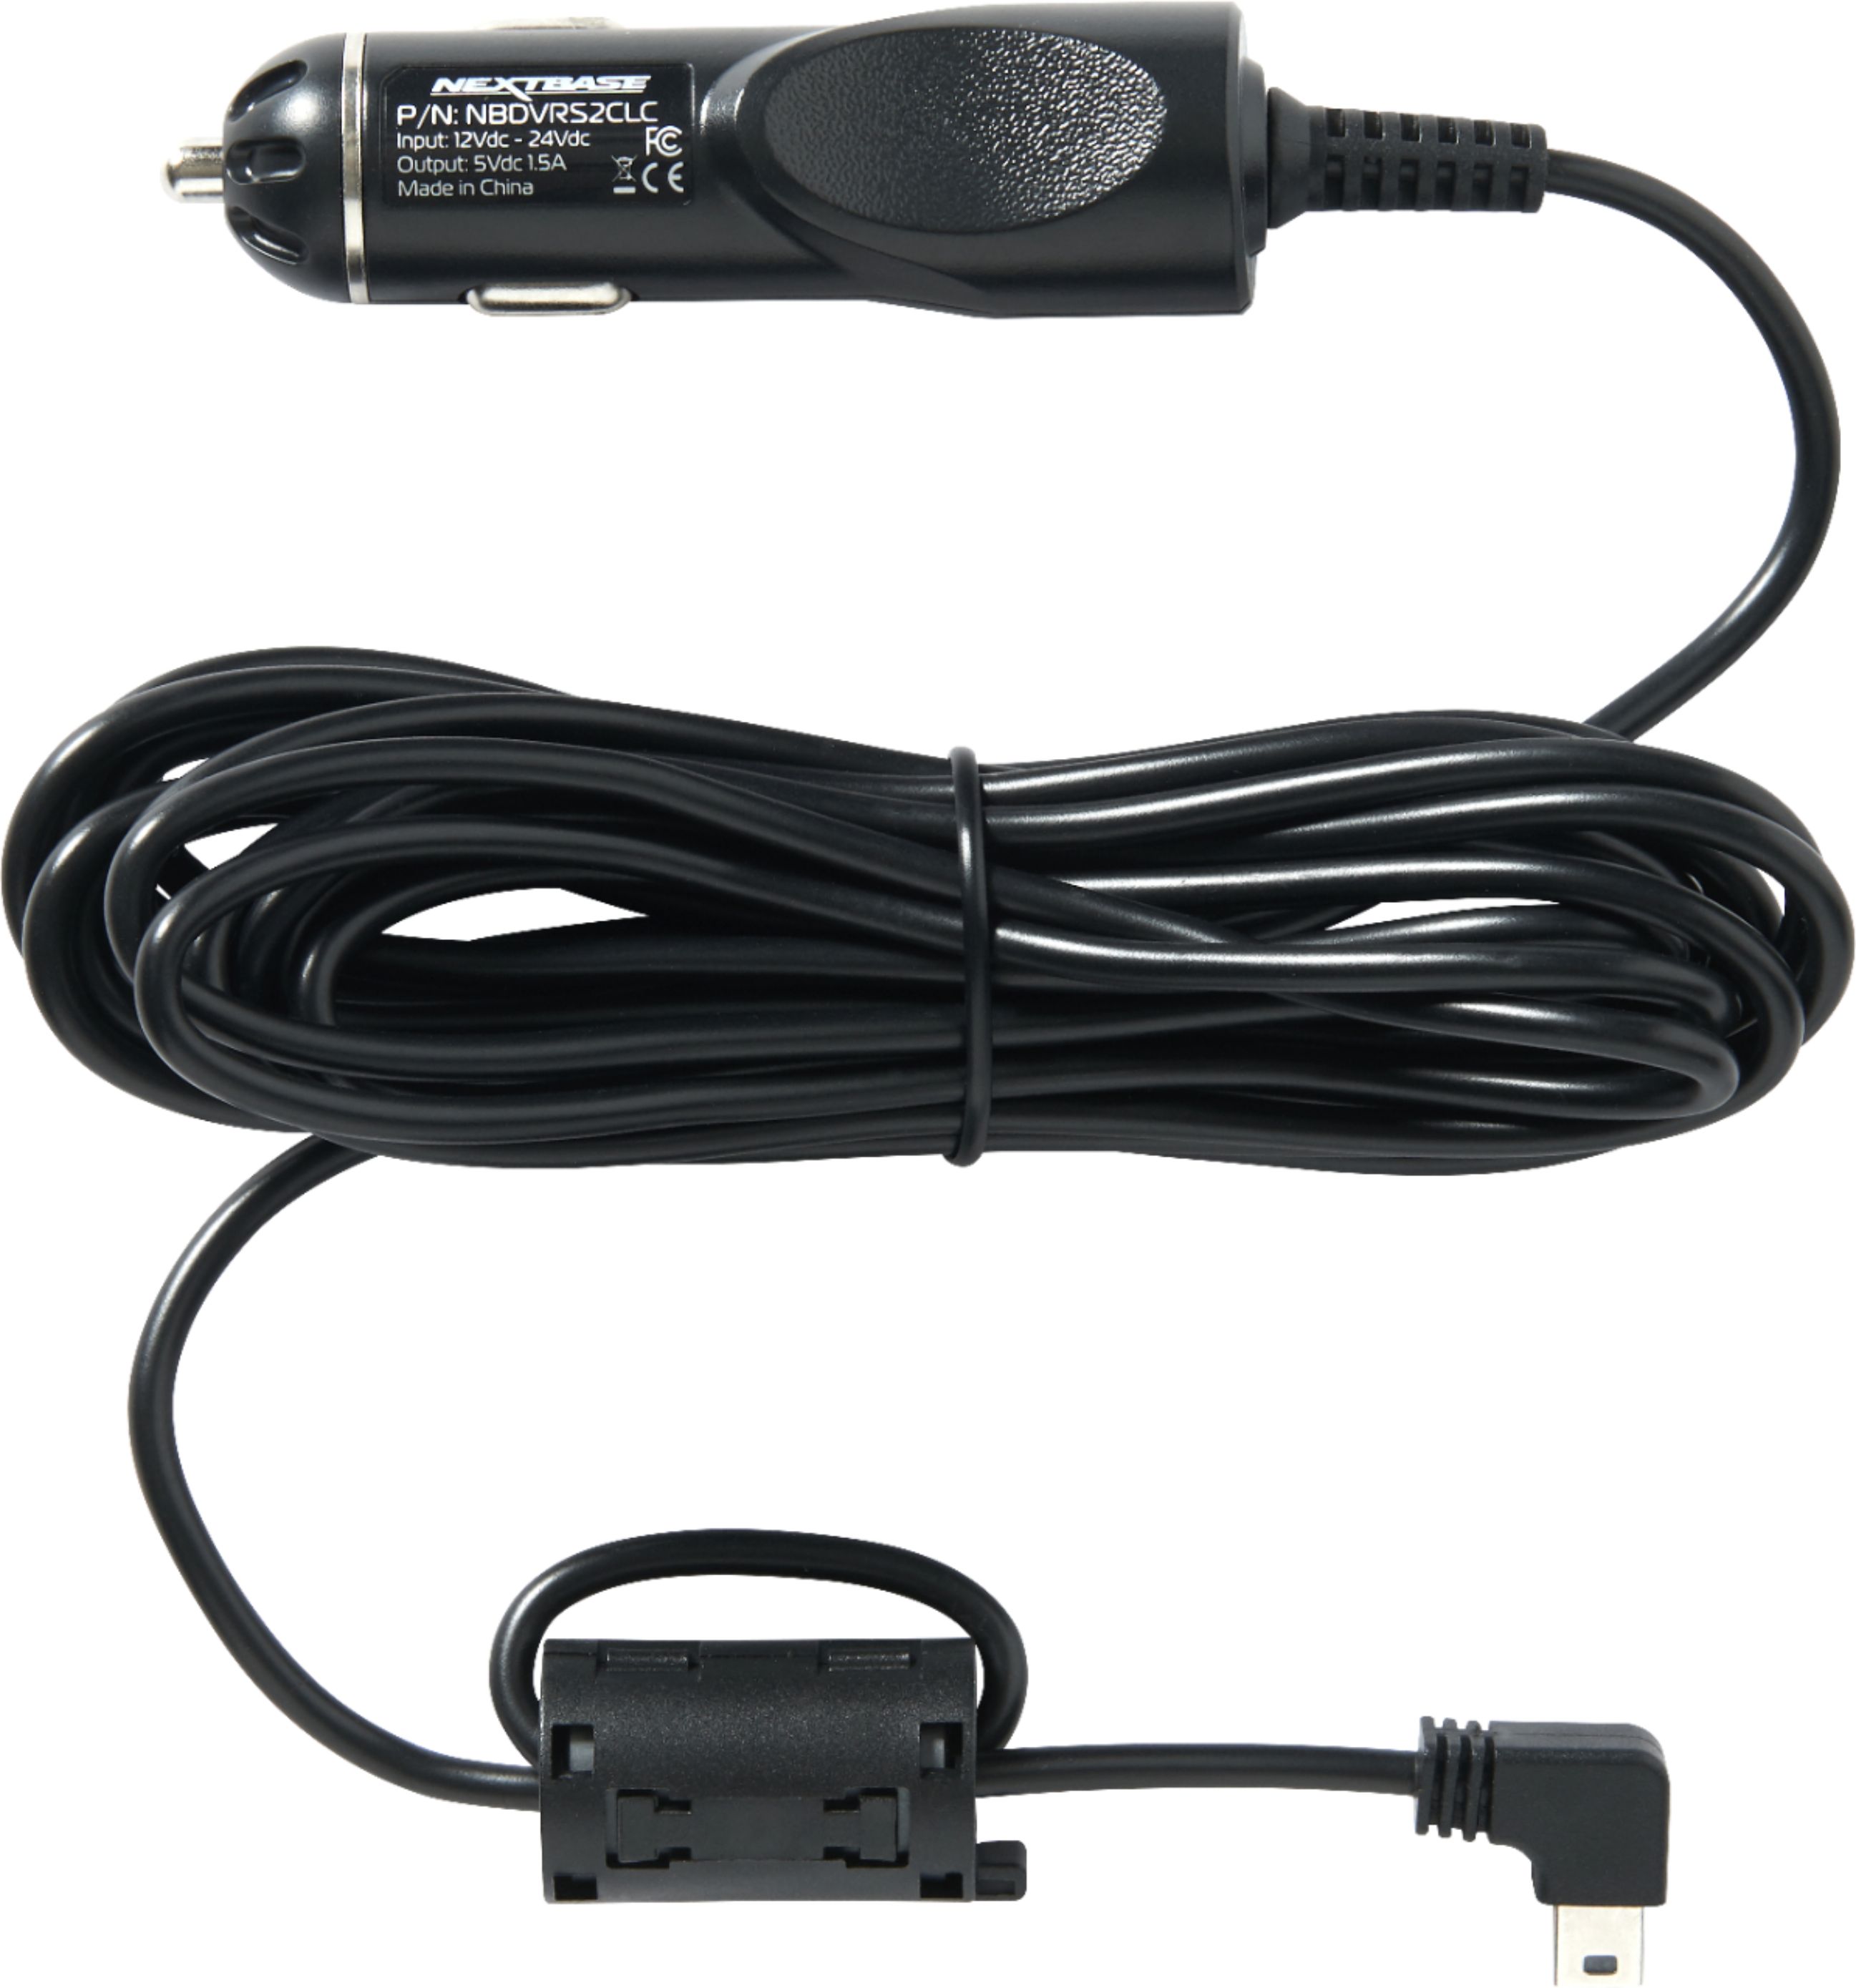 Nextbase Dash Cam Car Power Cable